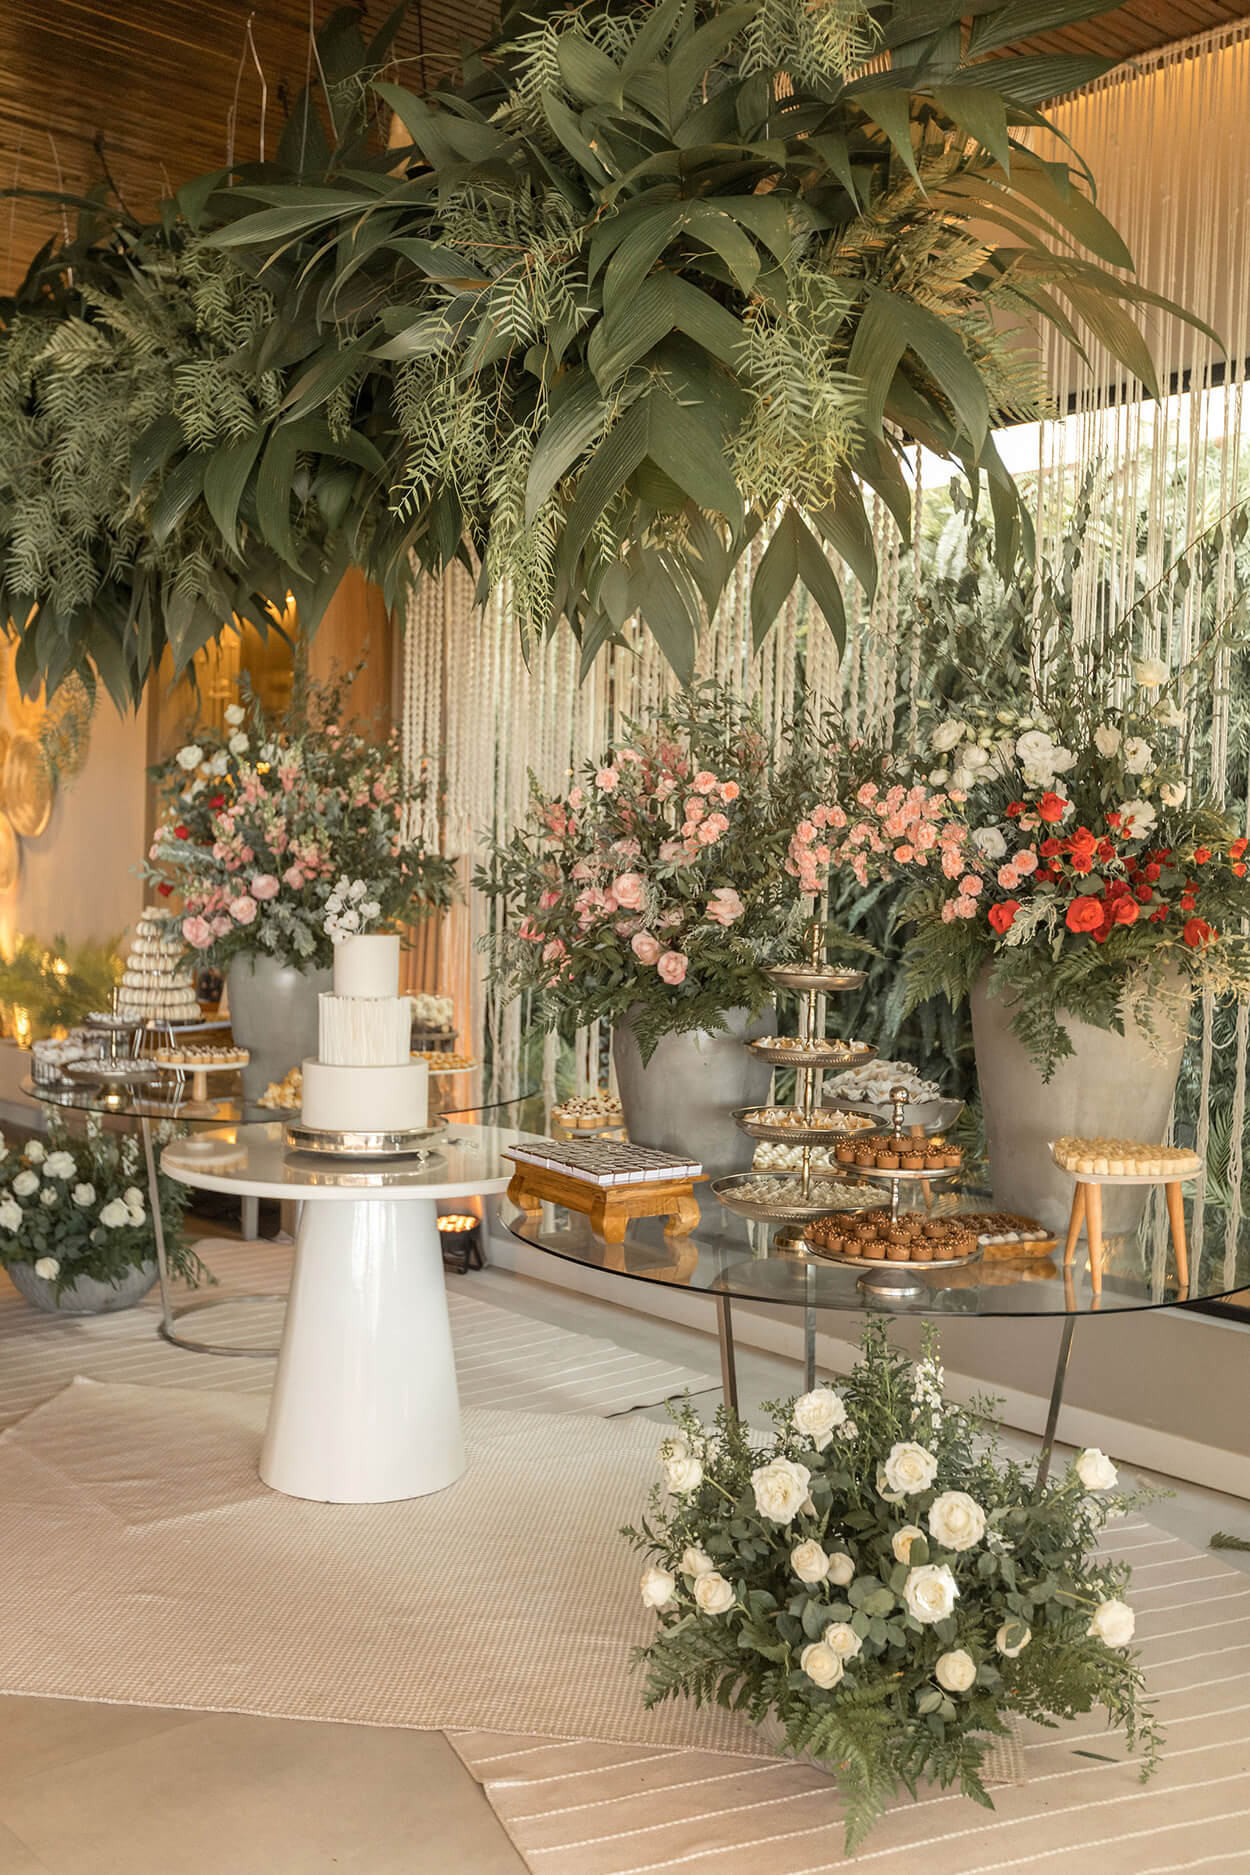 salão com duas mesas de vidro com bandejas de doces e vasos com flores brancas rosas e vermelhas e mesa branca redonda no centro com bolo de casamento